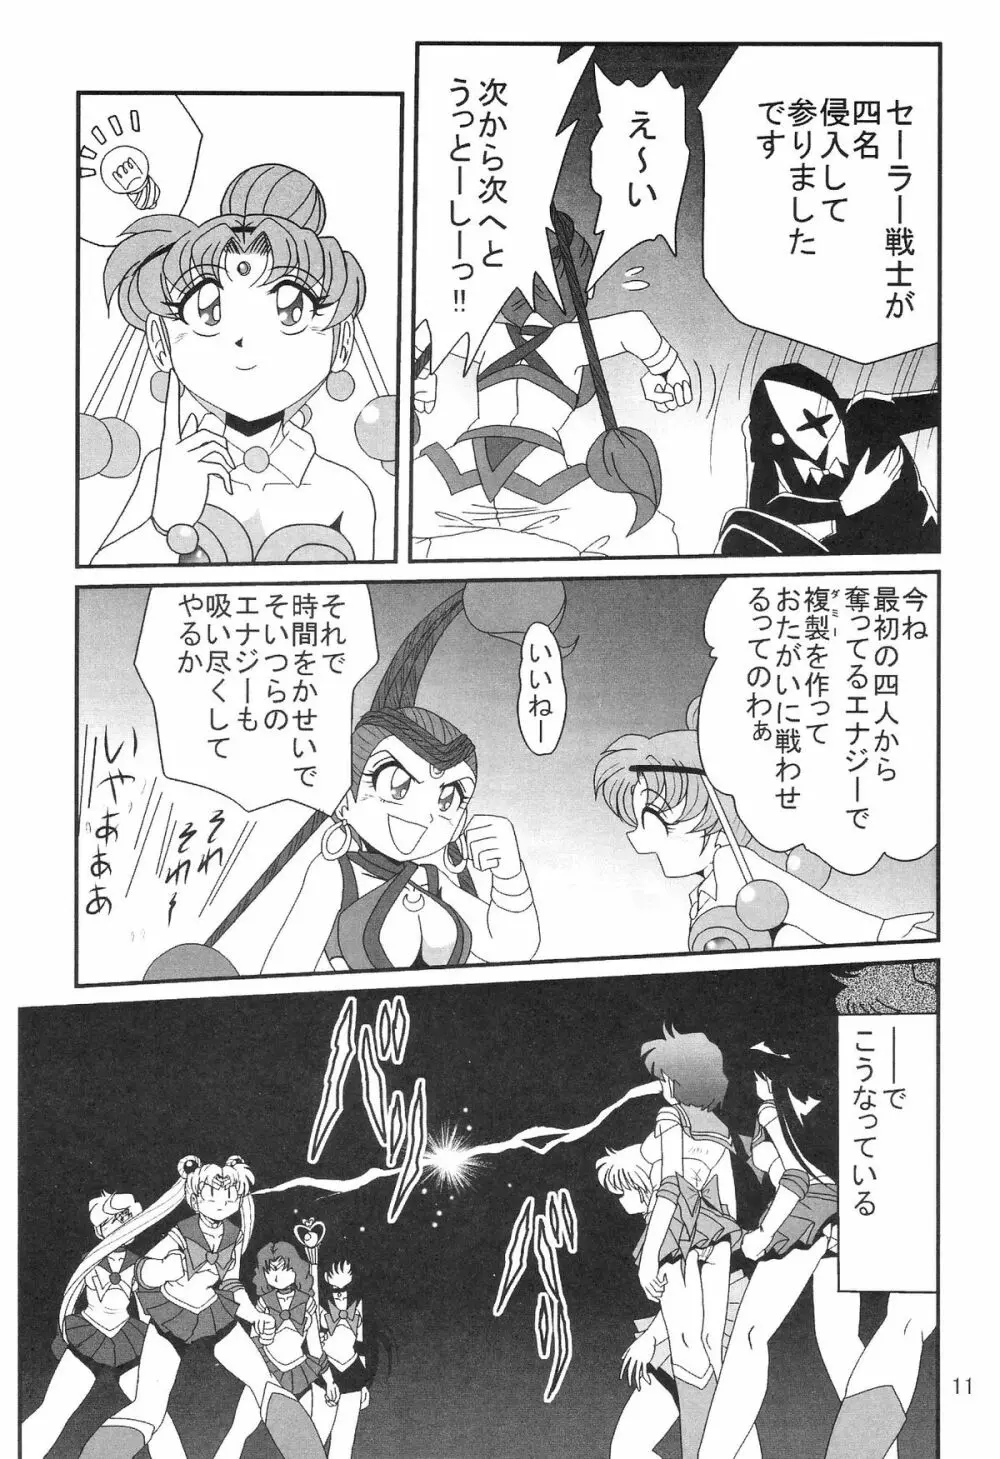 サイレント・サターン SS vol.8 13ページ